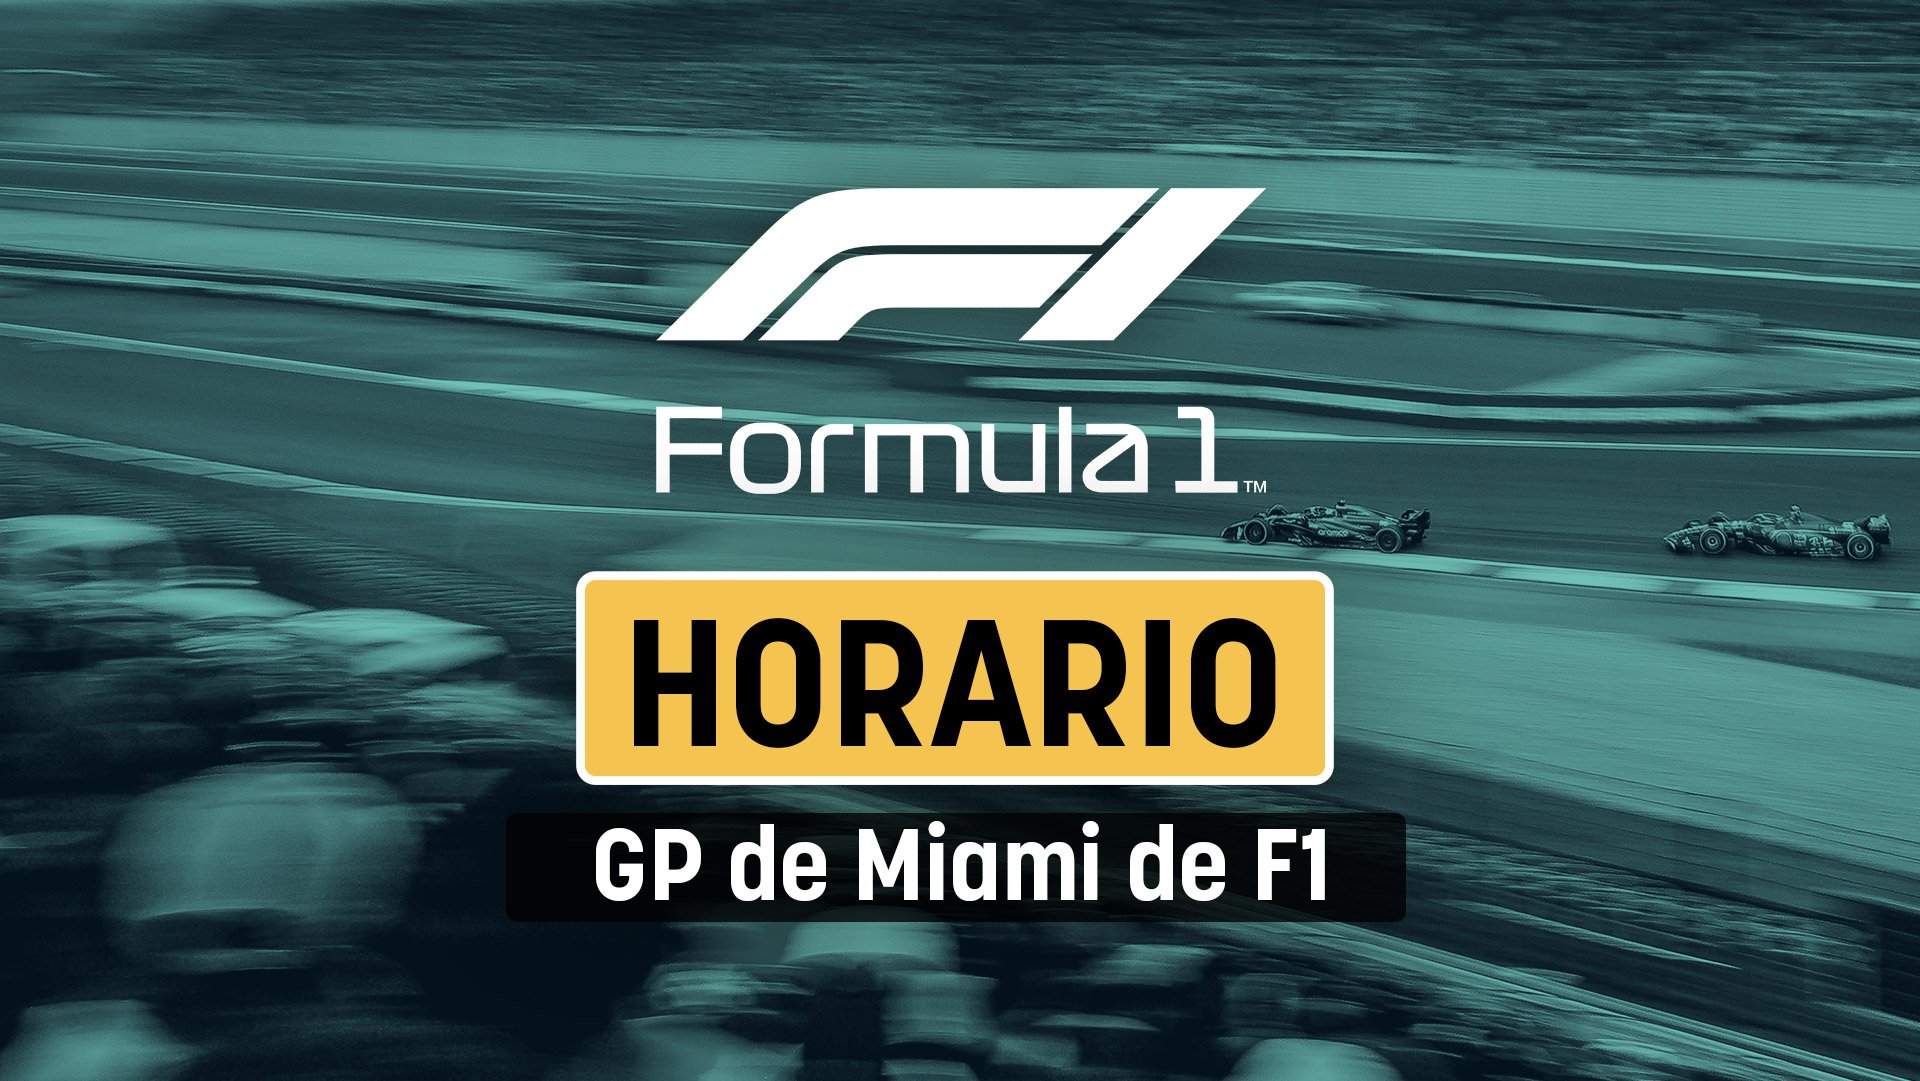 Horario del GP de F1 de Miami: dónde ver Fórmula 1 en directo gratis en vivo por TV y online.